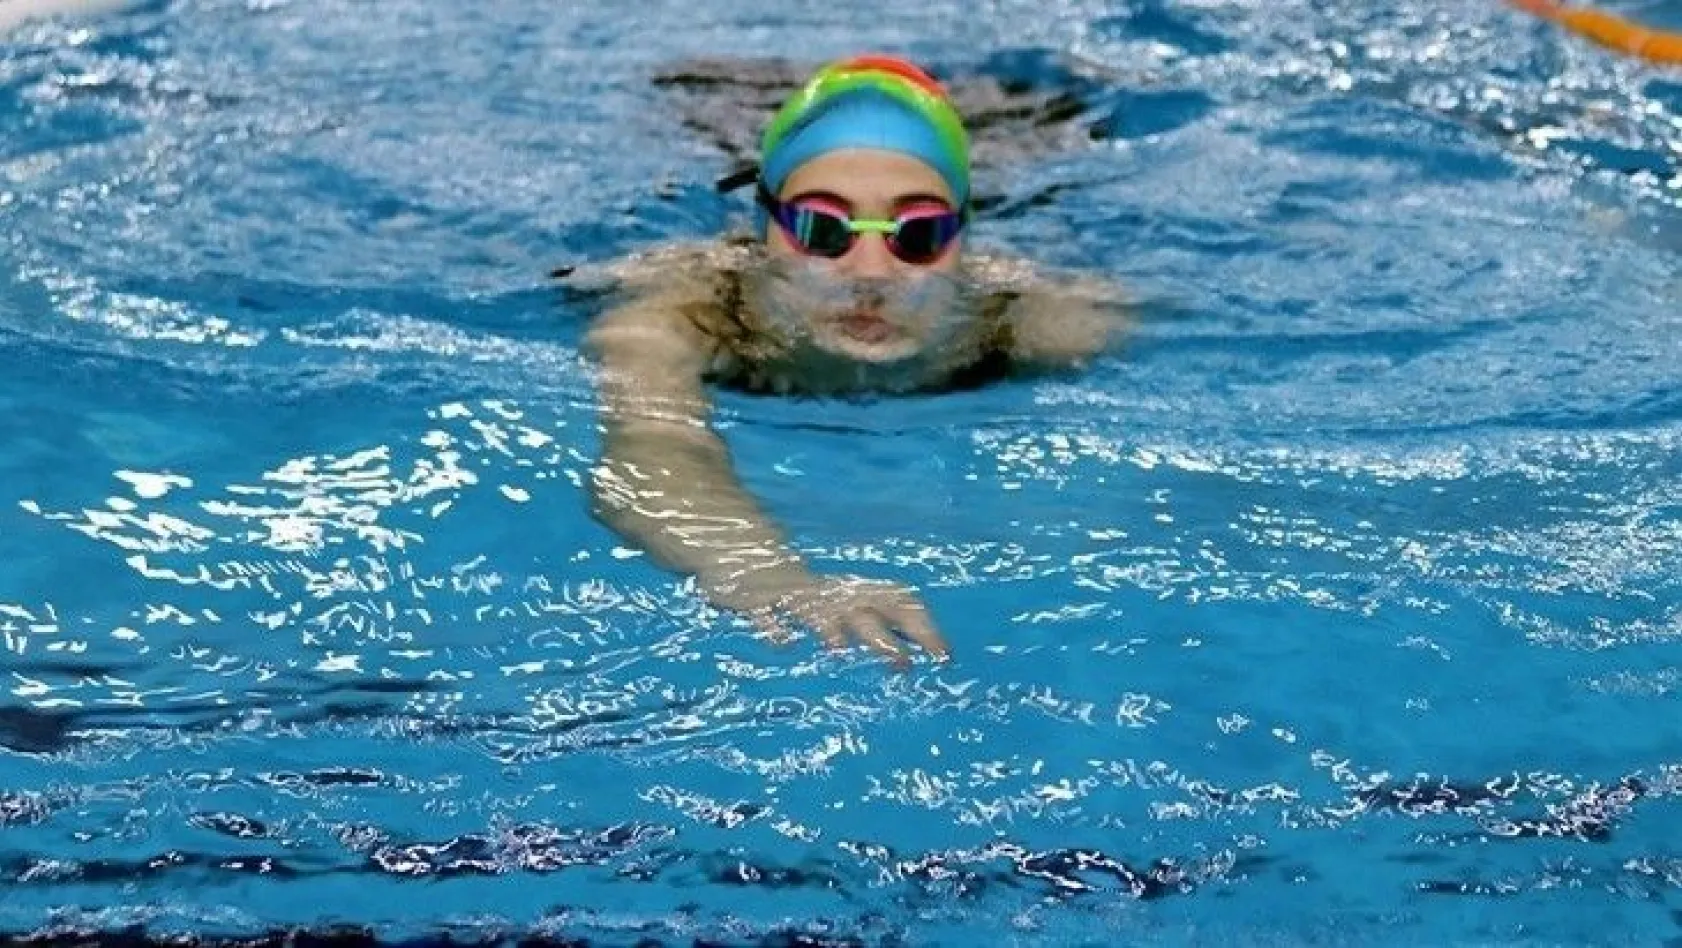 13 yaşındaki Tuanna, yüzmede Türkiye şampiyonu oldu